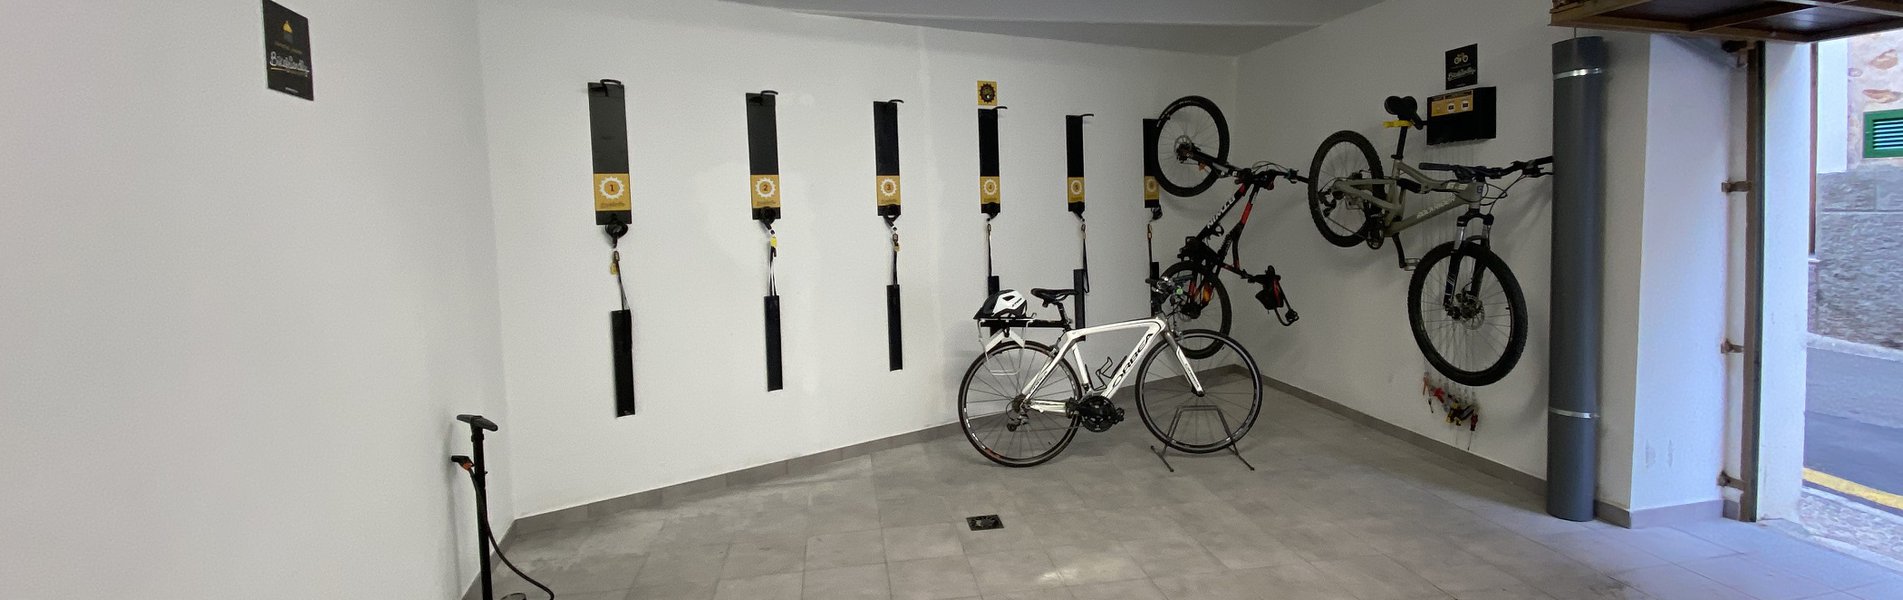 Garaje y Taller Bicicletas Alaro Narura 